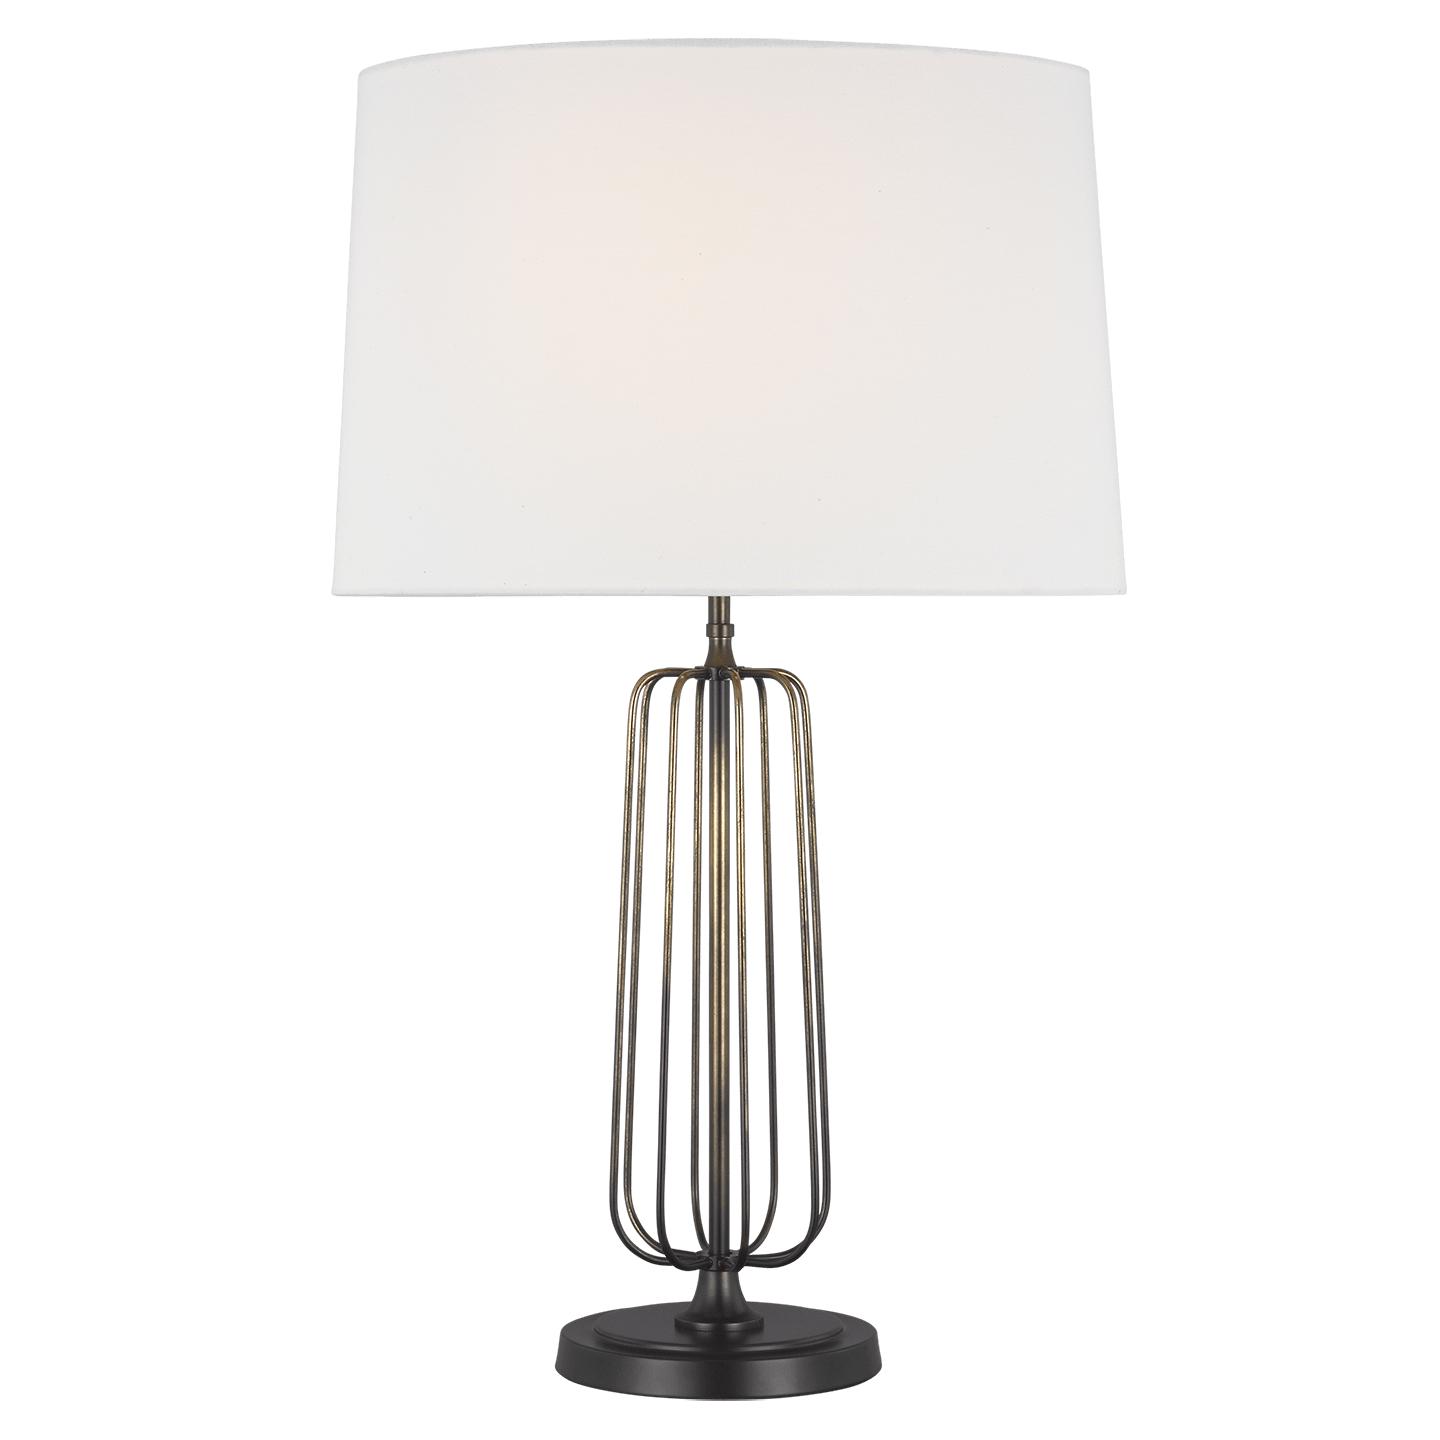 Купить Настольная лампа Milo Table Lamp в интернет-магазине roooms.ru